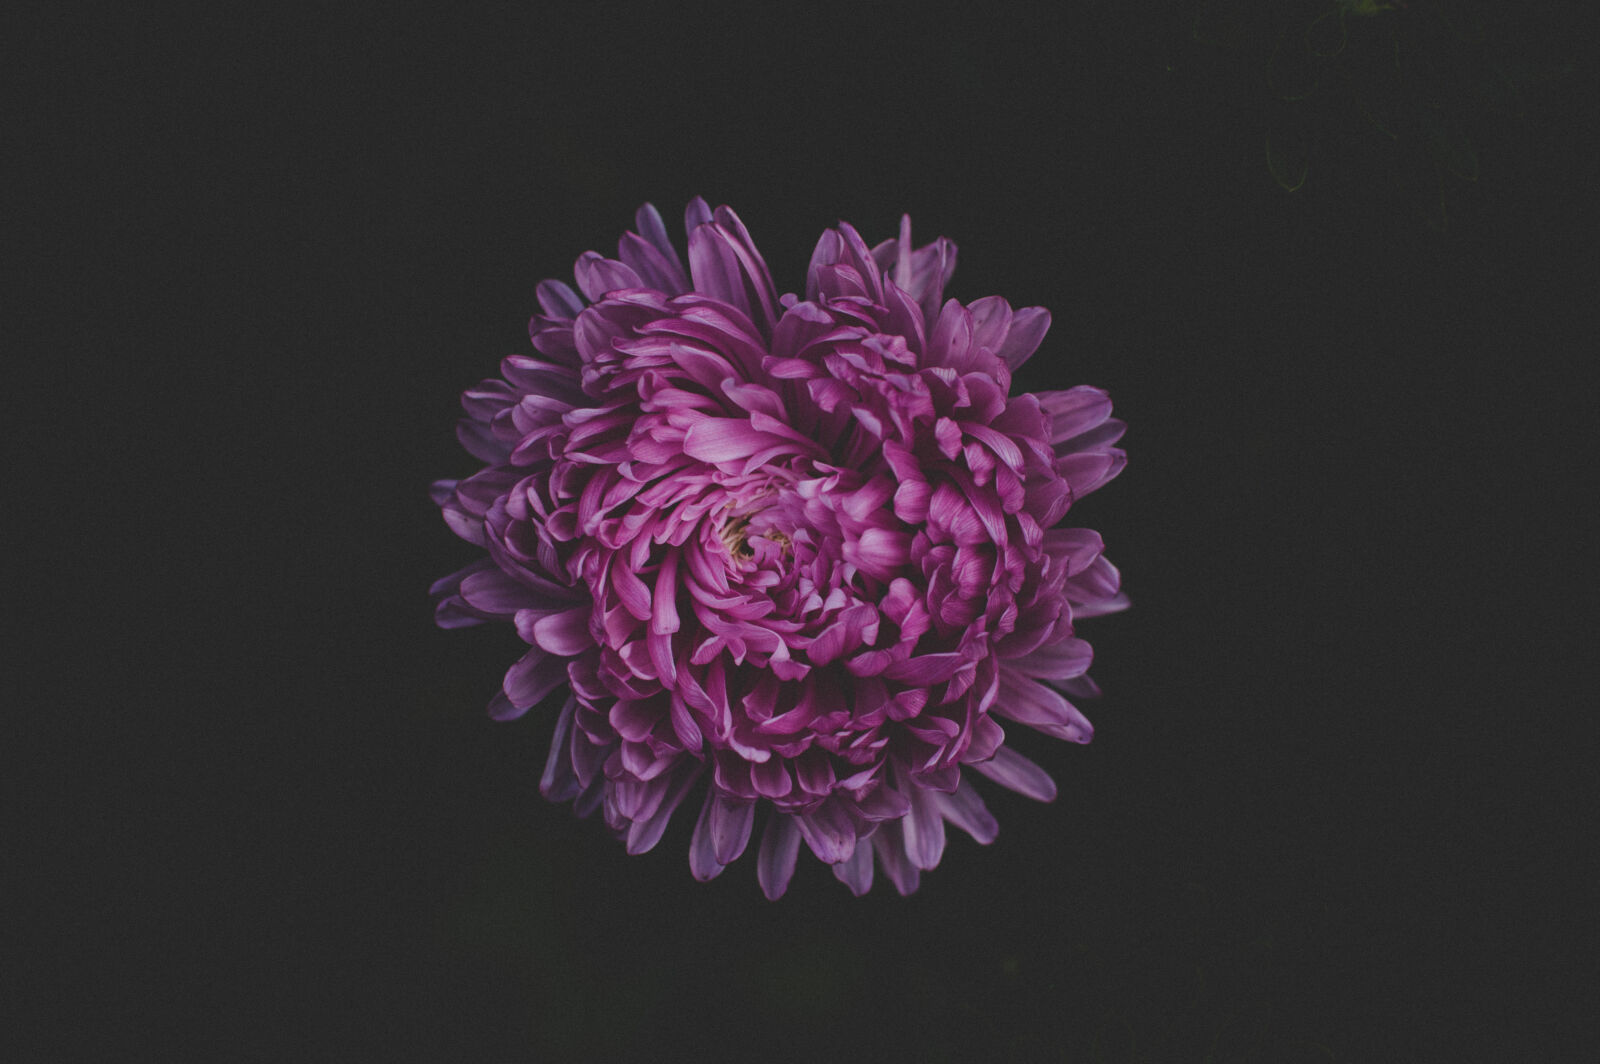 Nikon AF-S DX Nikkor 35mm F1.8G sample photo. Purple, petaled, flower photography